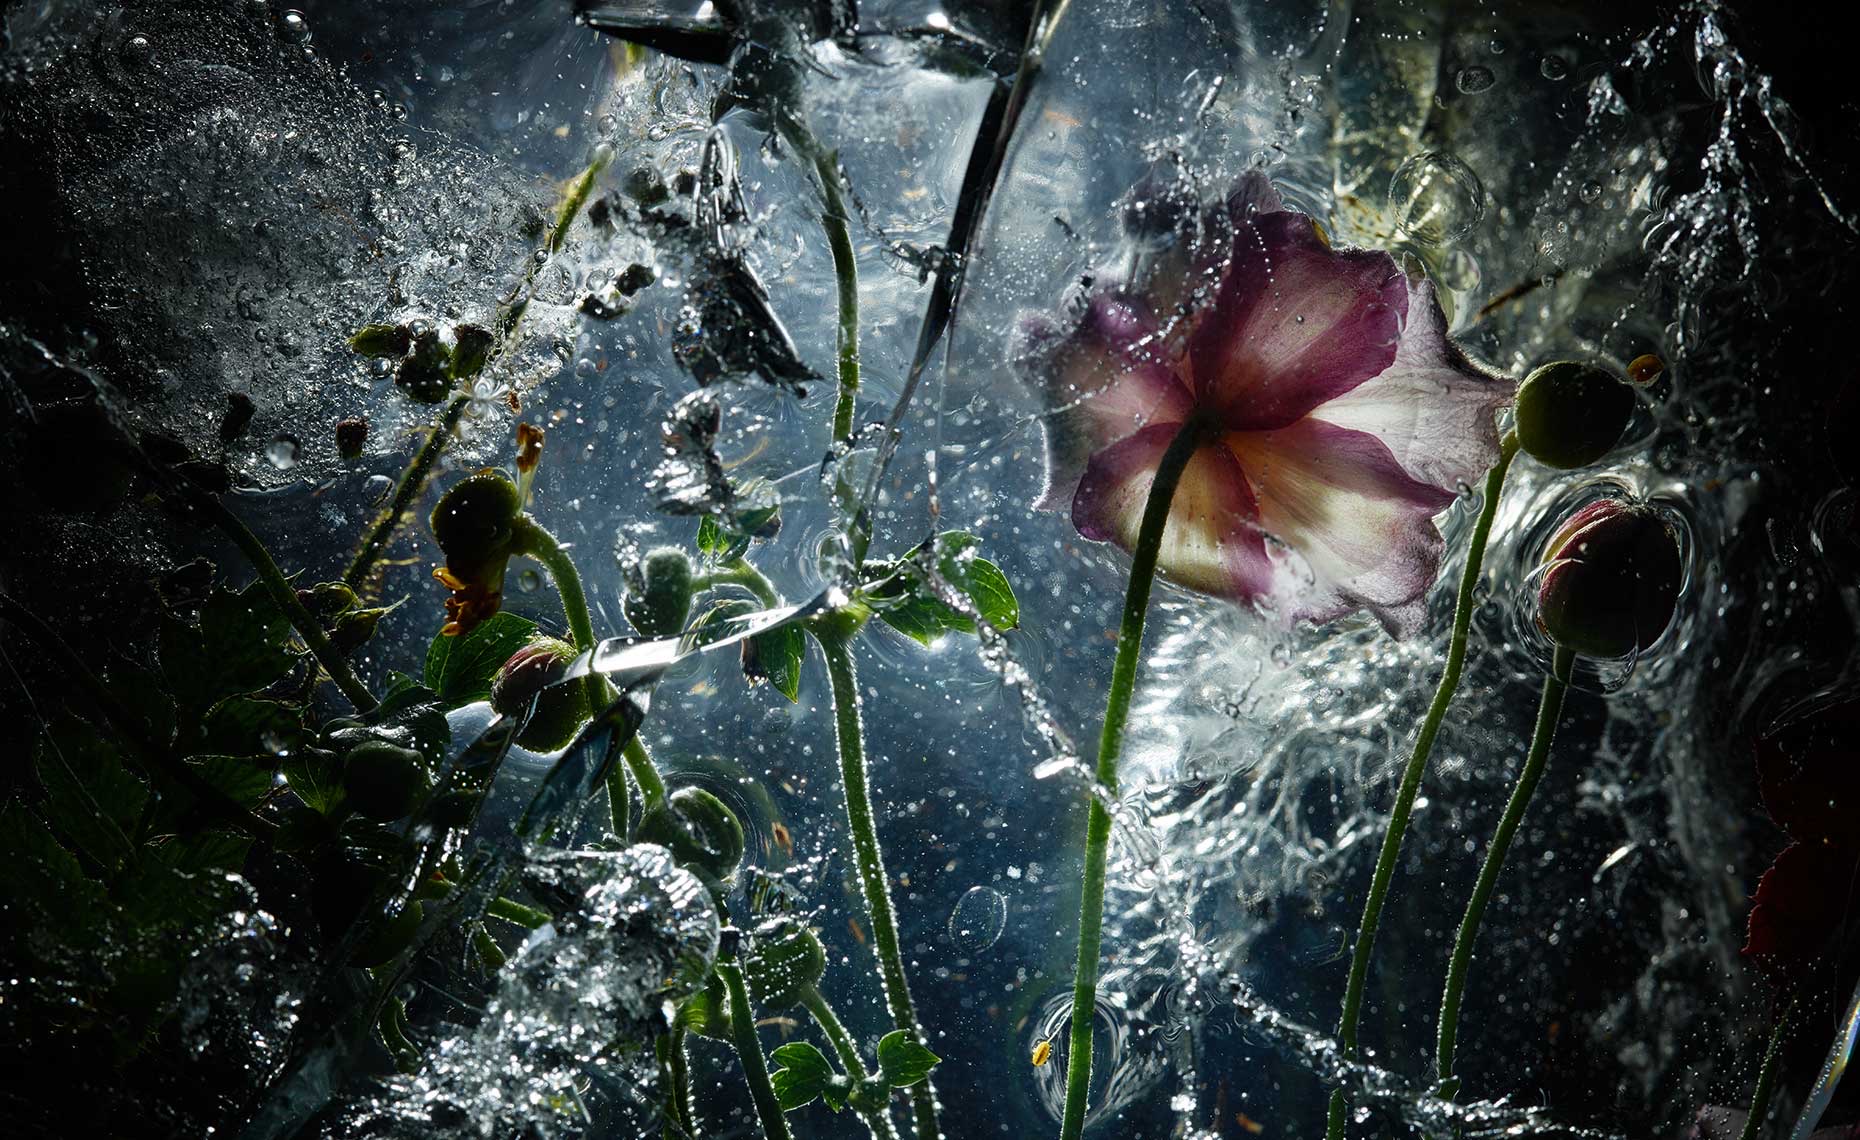 Cold Flowers Underwater - Exhibition - Marc Wuchner BFF Professional - Stills -  Produktfotografie Frankfurt